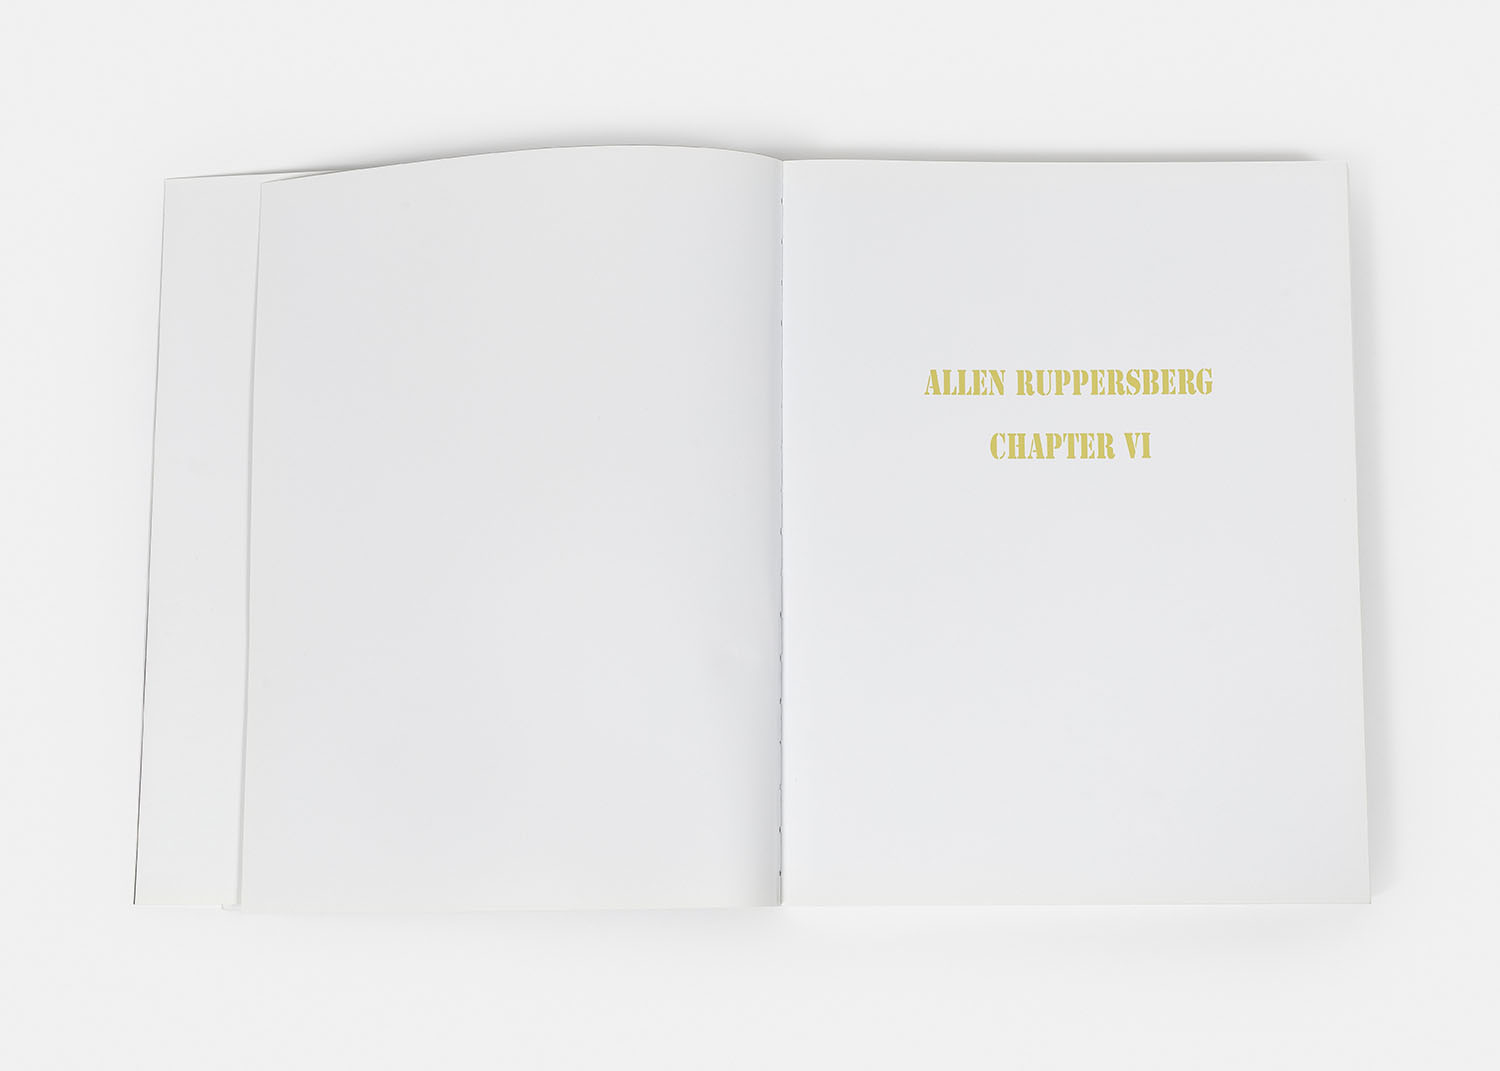 Allen Ruppersberg - Chapter VI, 2009